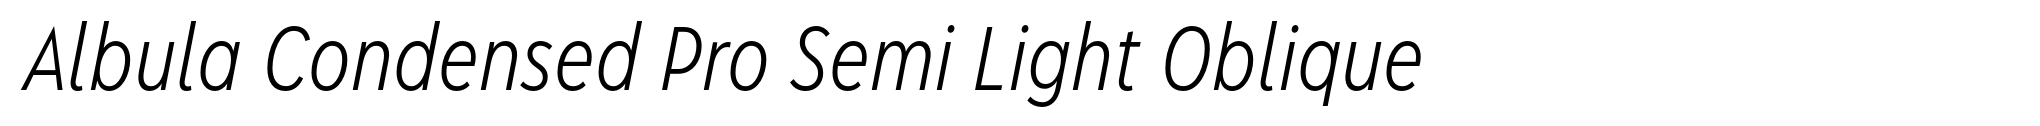 Albula Condensed Pro Semi Light Oblique image